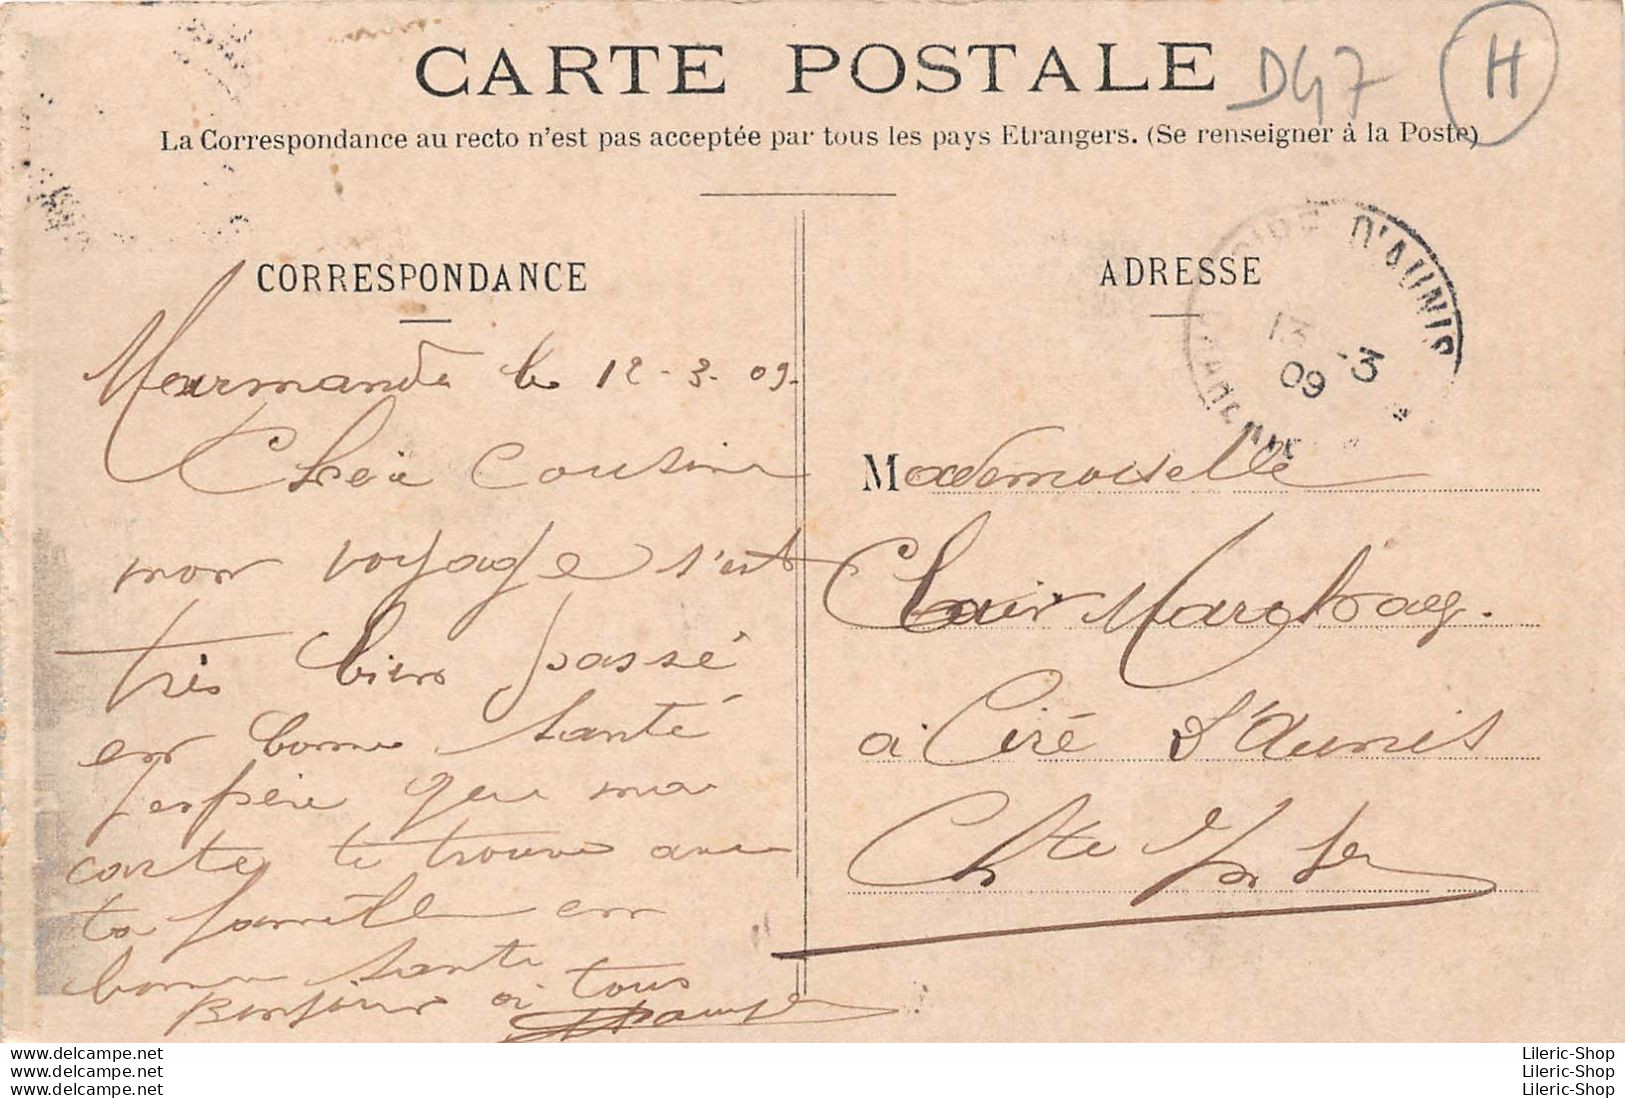 MARMANDE (47) CPA 1909 - Avenue De La Gare - Hôtel Des Messageries -. Éd. Magasins Réunis - Phot. BARBEAU - Marmande